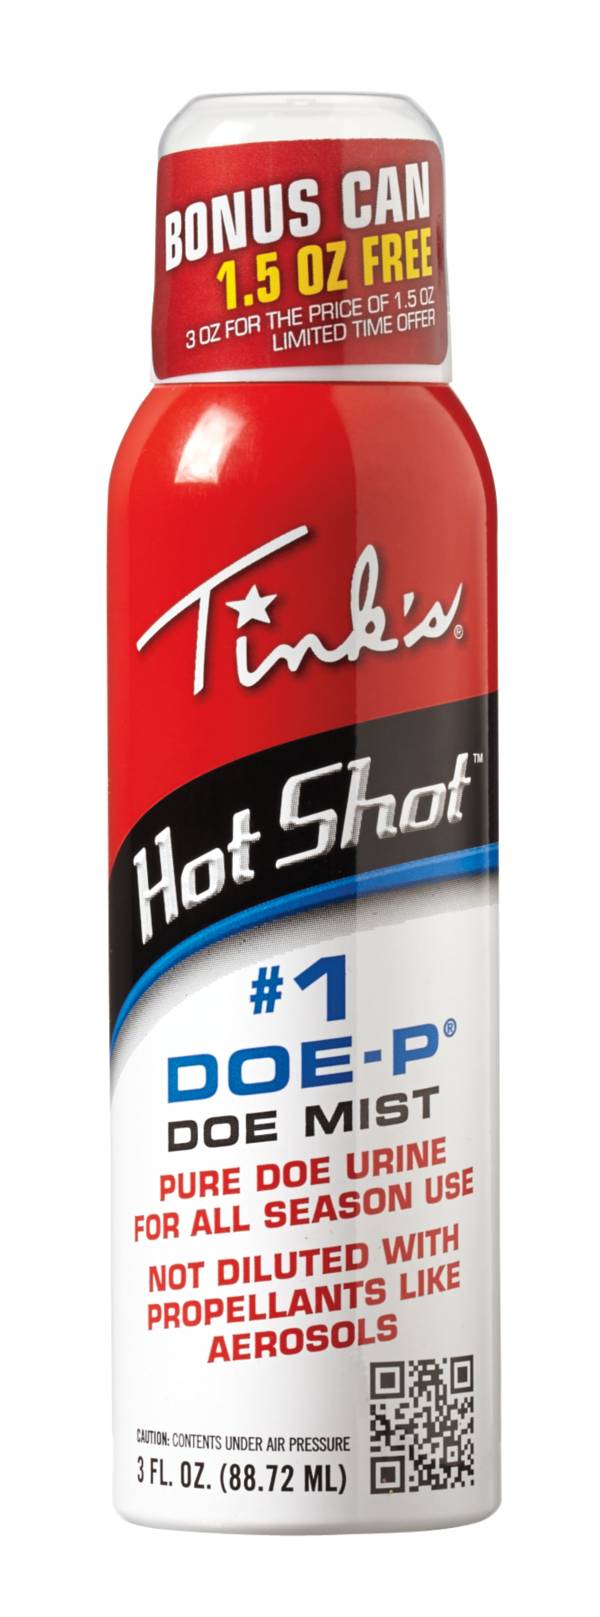 Tink's Hot Shot #1 Doe-P Non Estrous Mist Deer Lure product image